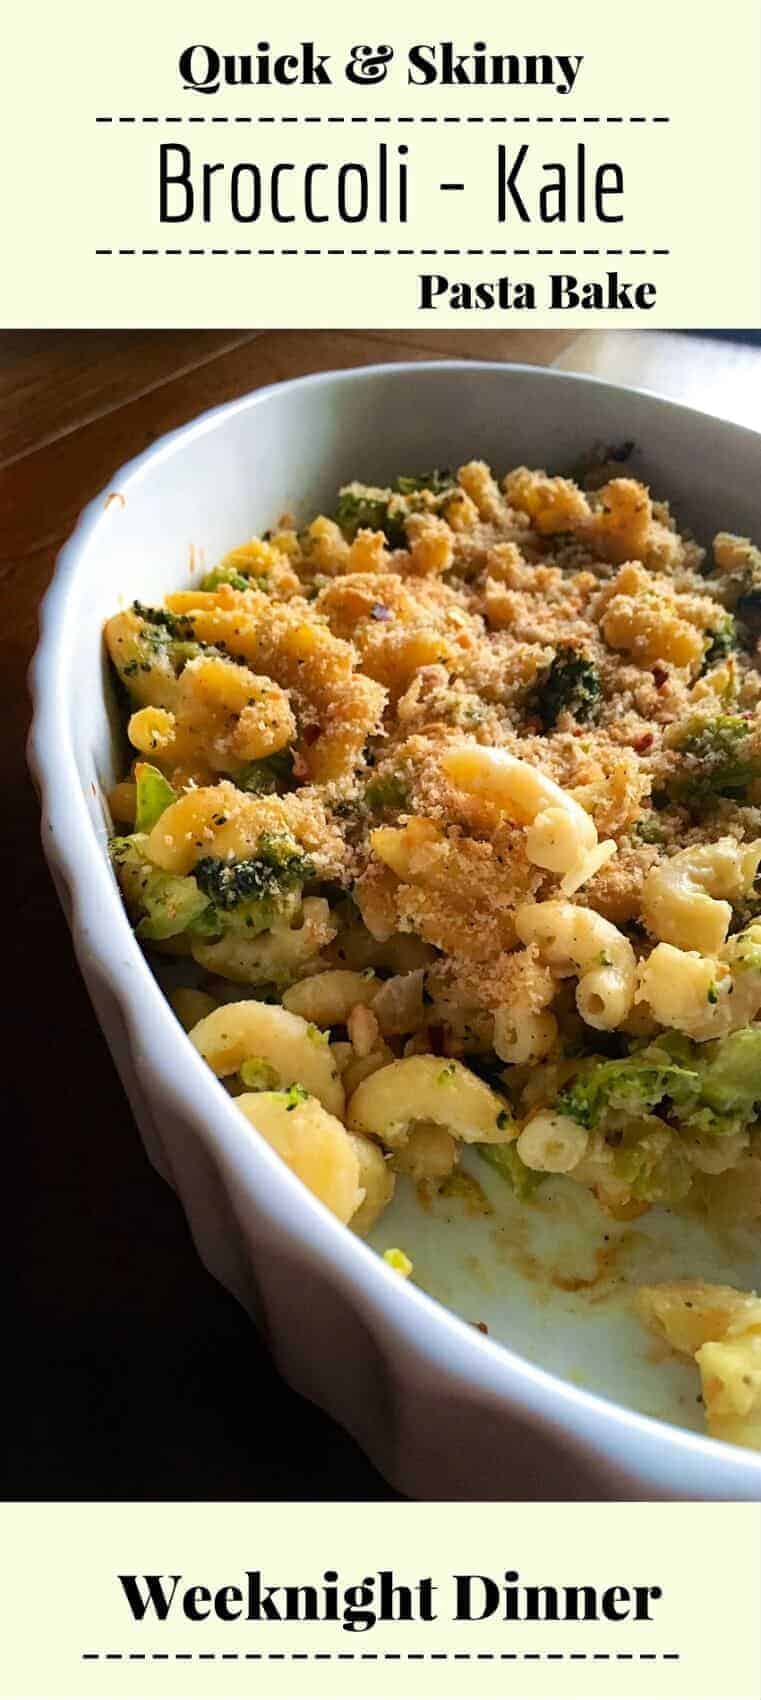 Quick & Skinny Broccoli-Kale Pasta Bake :(Weeknight Dinner) : #weeknight #pasta #bake #kale #broccoli